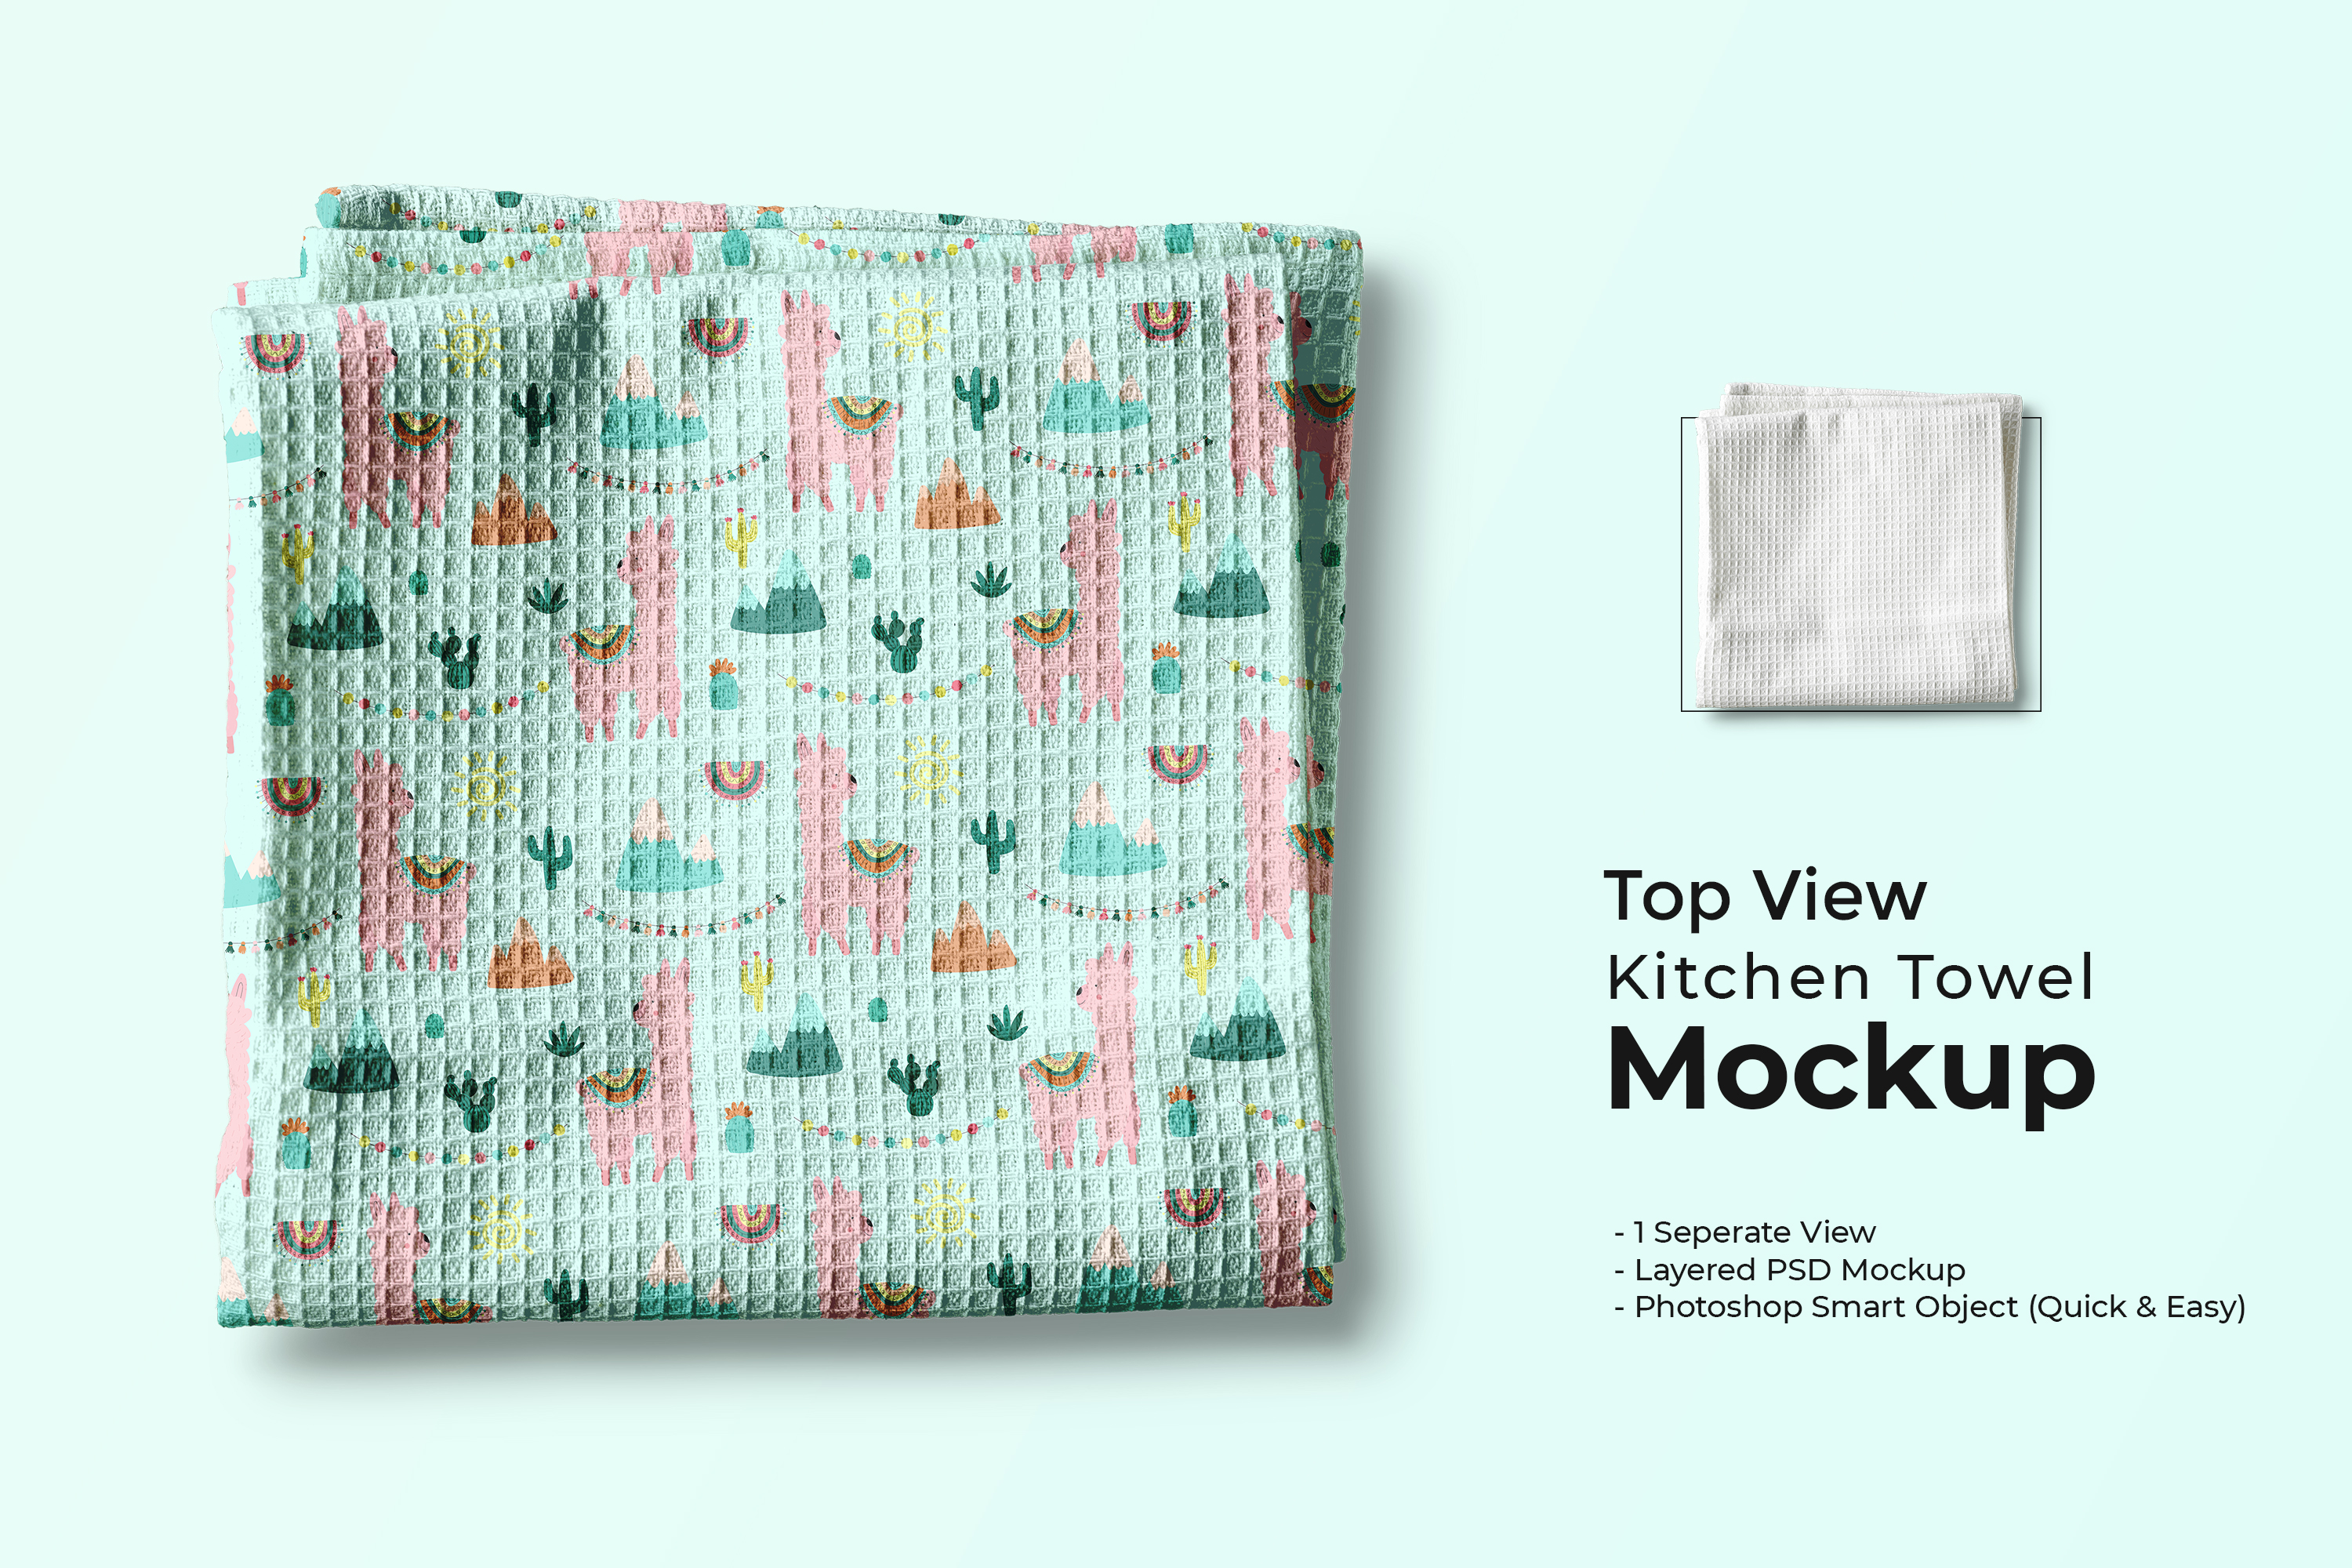 986 毛巾手帕洗碗巾PSD样机模型Top View Kitchen Towel Mockup